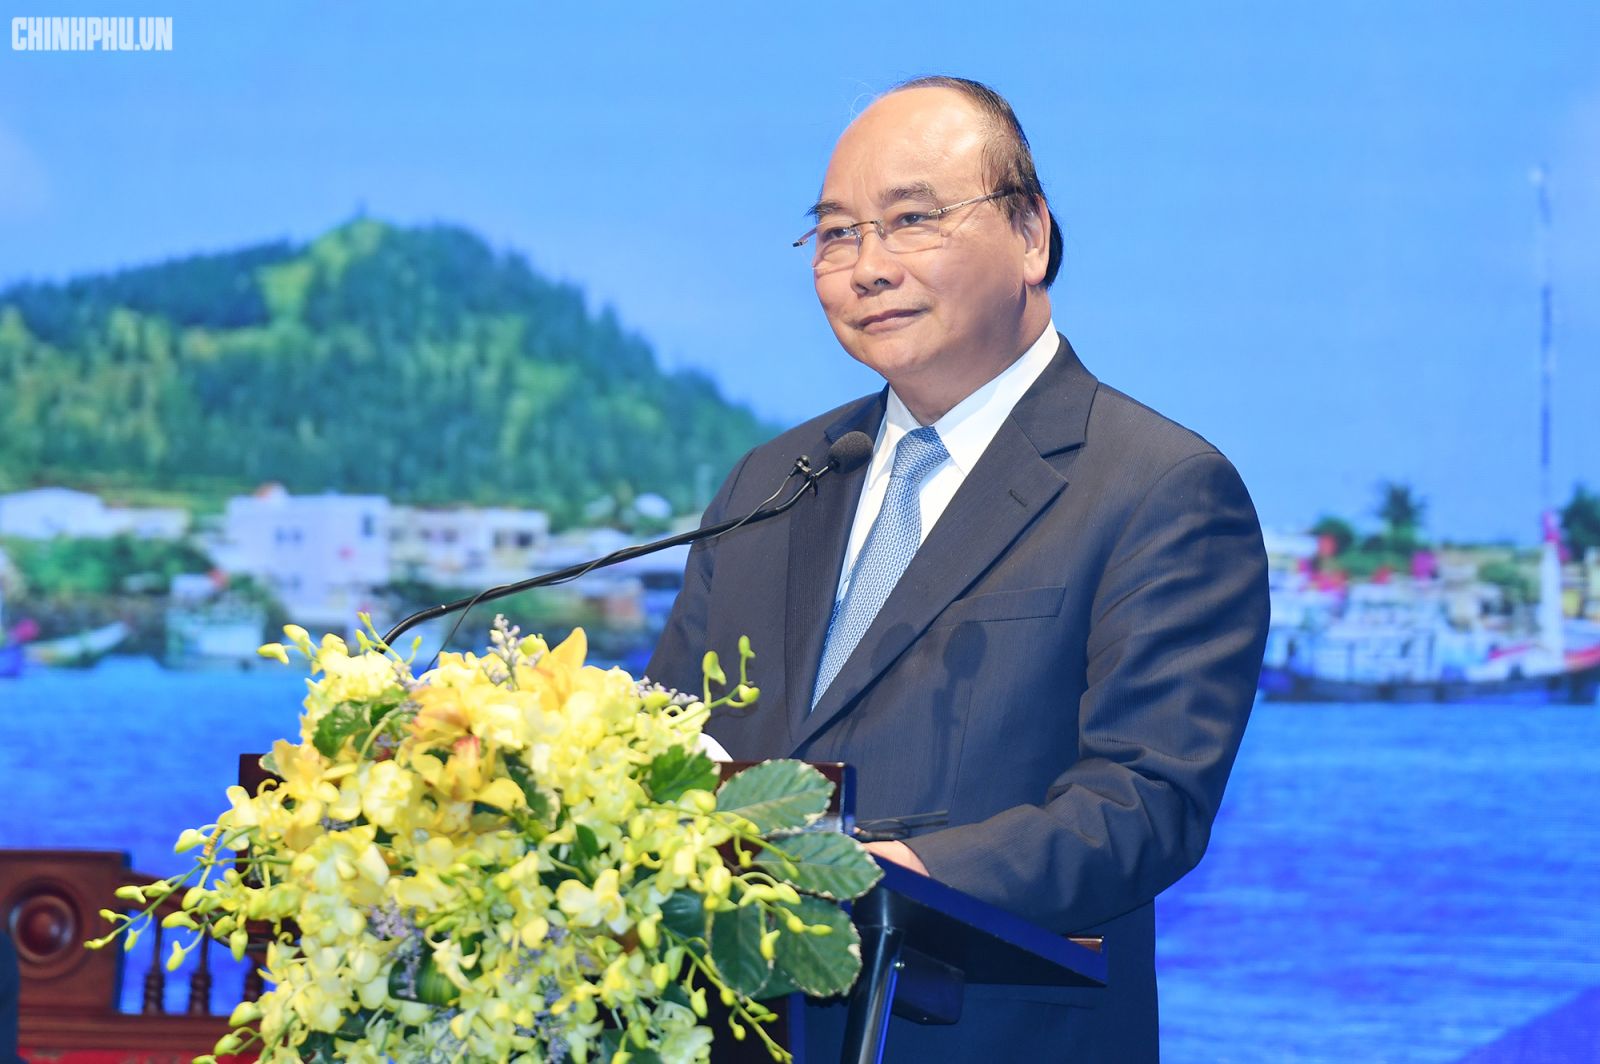 Thủ tướng phát biểu tại Hội nghị phát triển du lịch miền Trung - Tây Nguyên. Ảnh VGP/Quang Hiếu